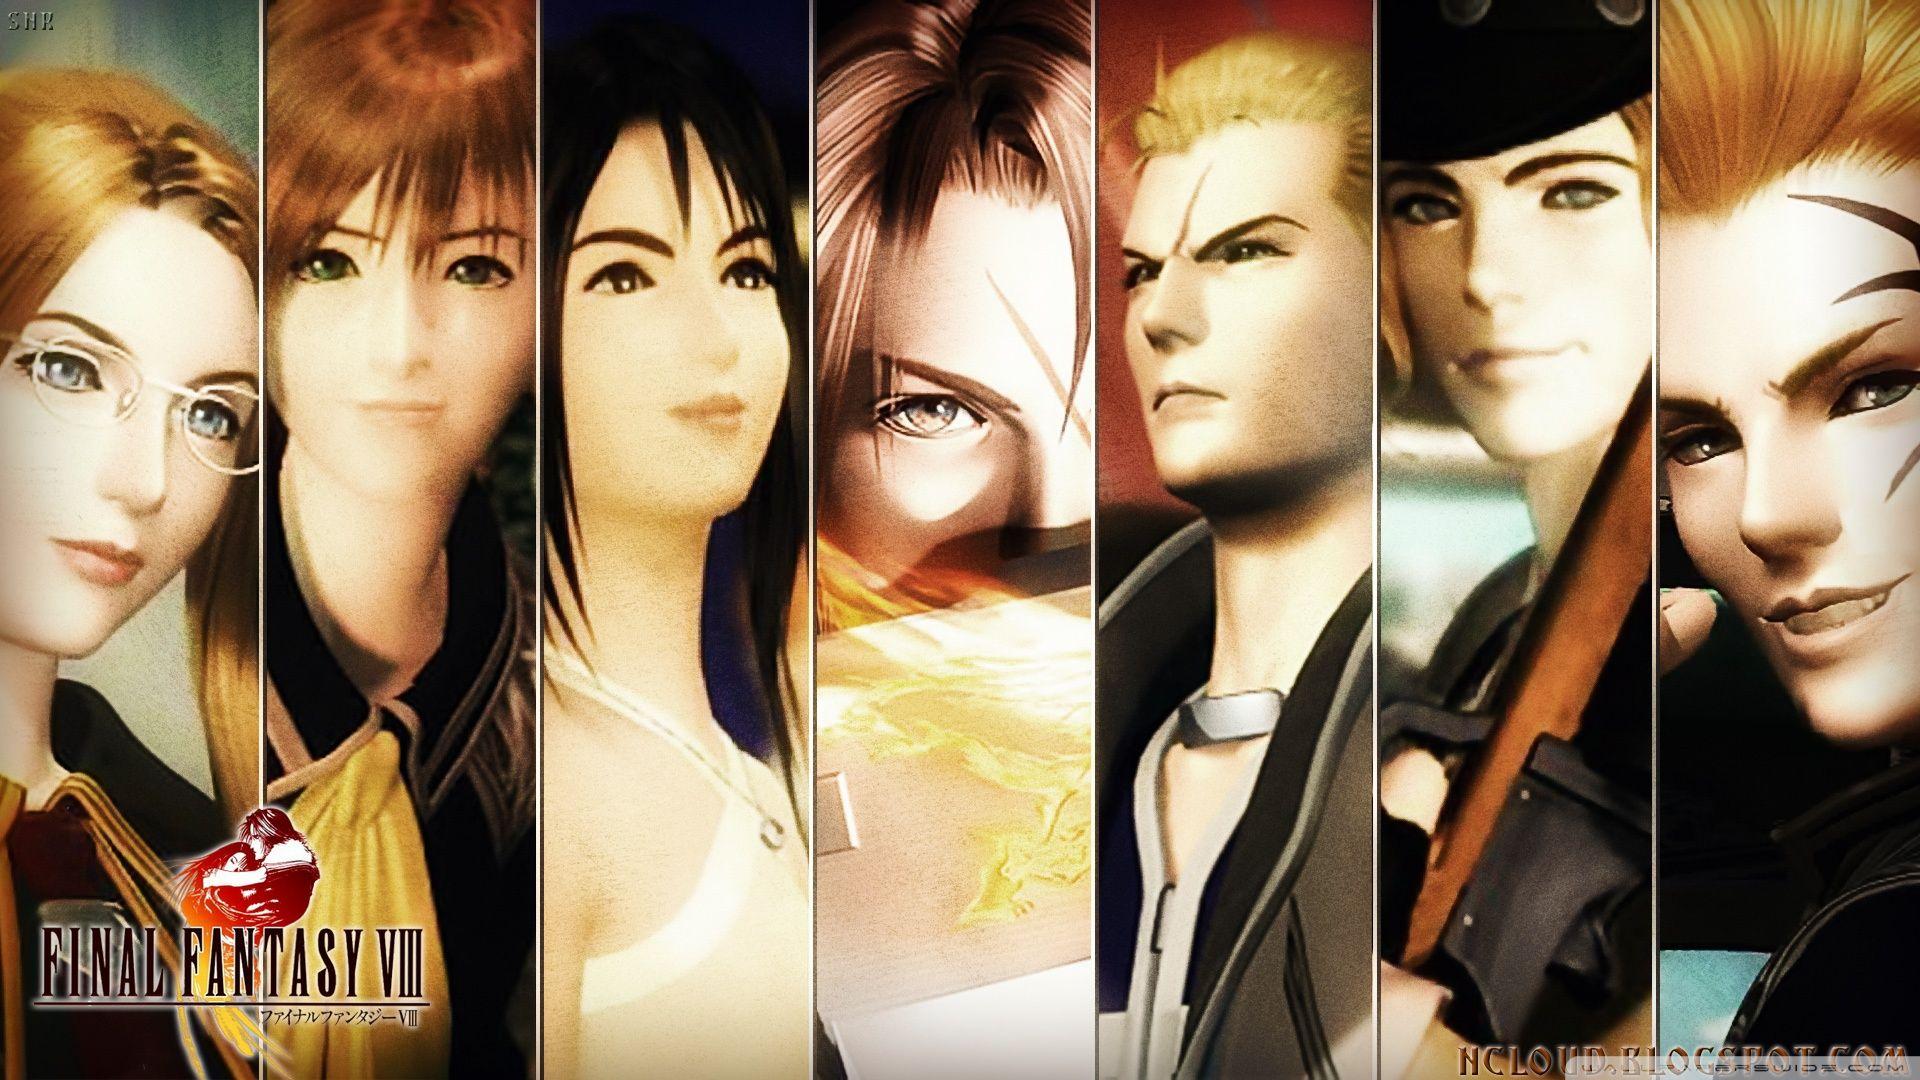 Final Fantasy VIII Cast ❤ 4K HD Desktop Wallpaper for 4K Ultra HD TV